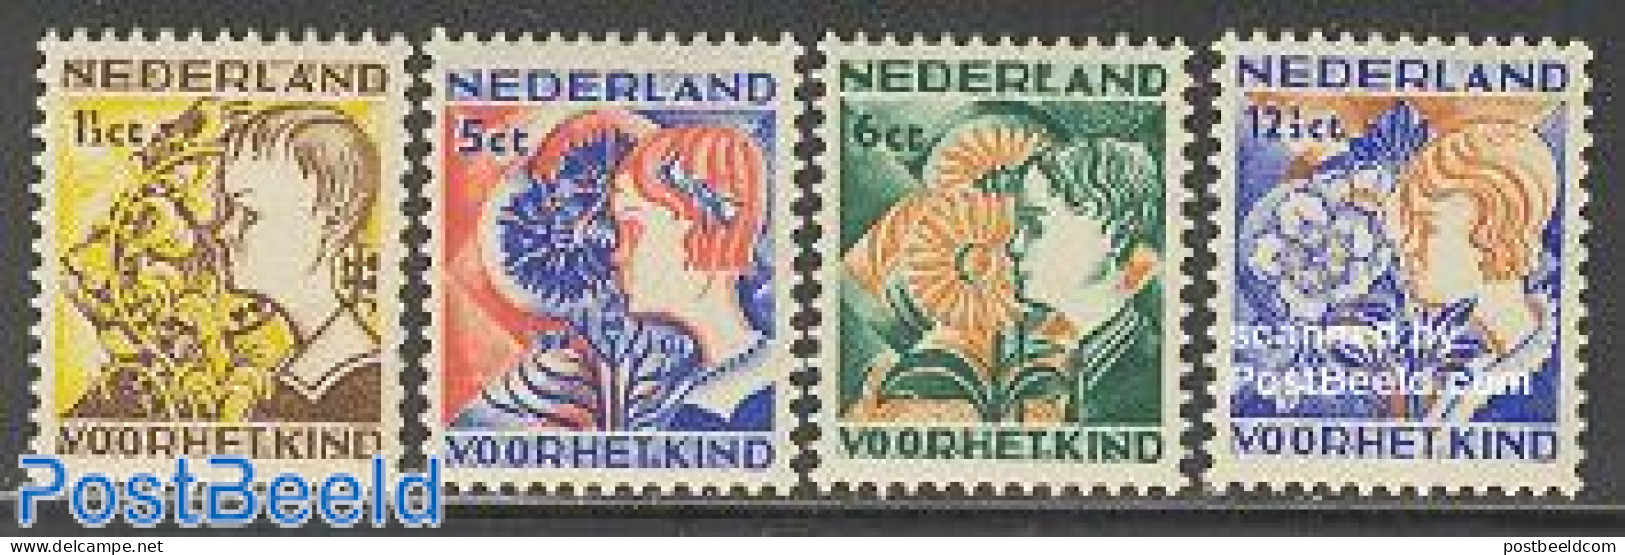 Netherlands 1932 Child Welfare 4v, Unused (hinged), Nature - Flowers & Plants - Unused Stamps